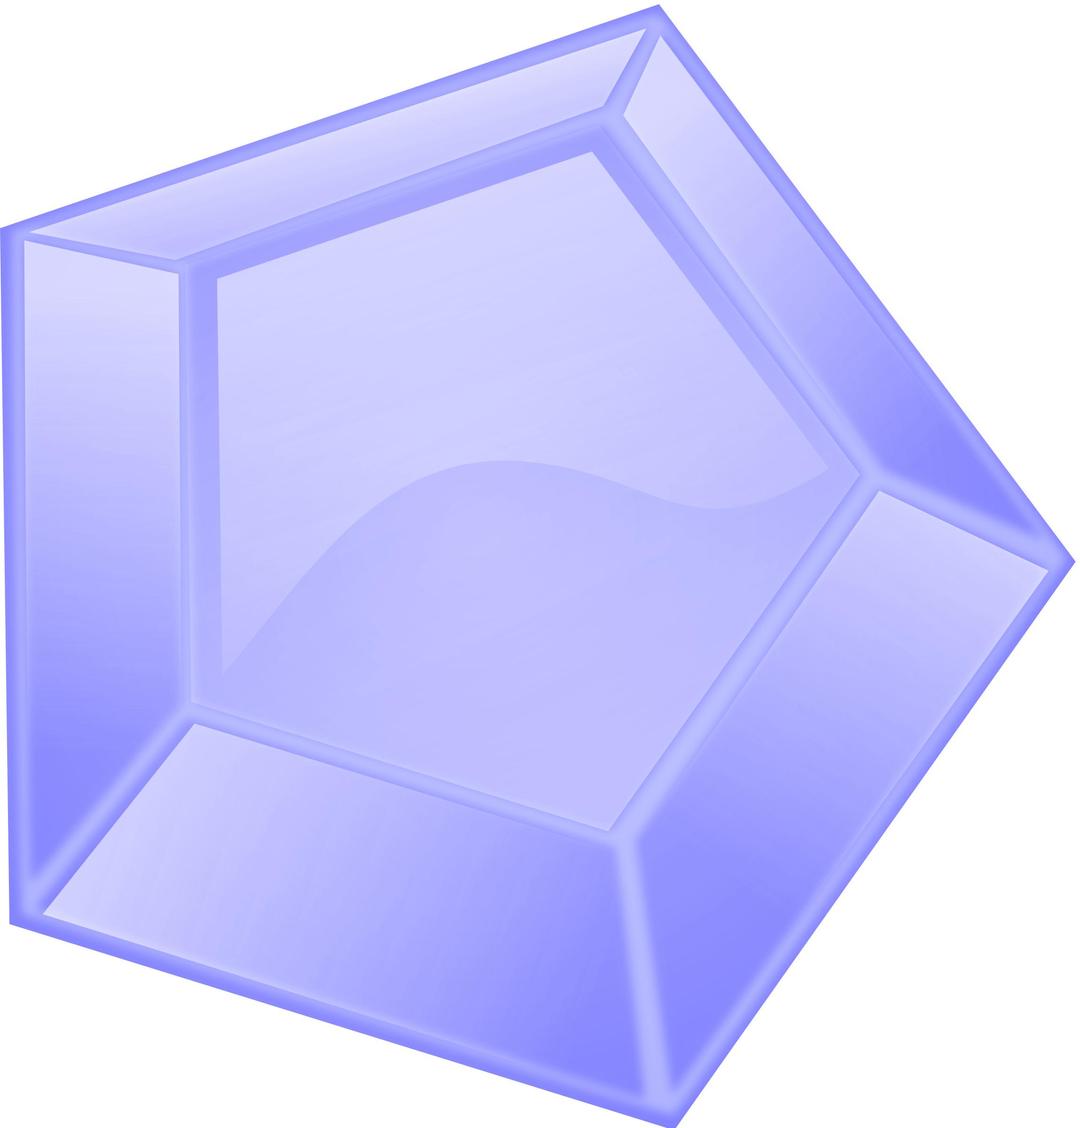 Diamond Remix 2 png transparent